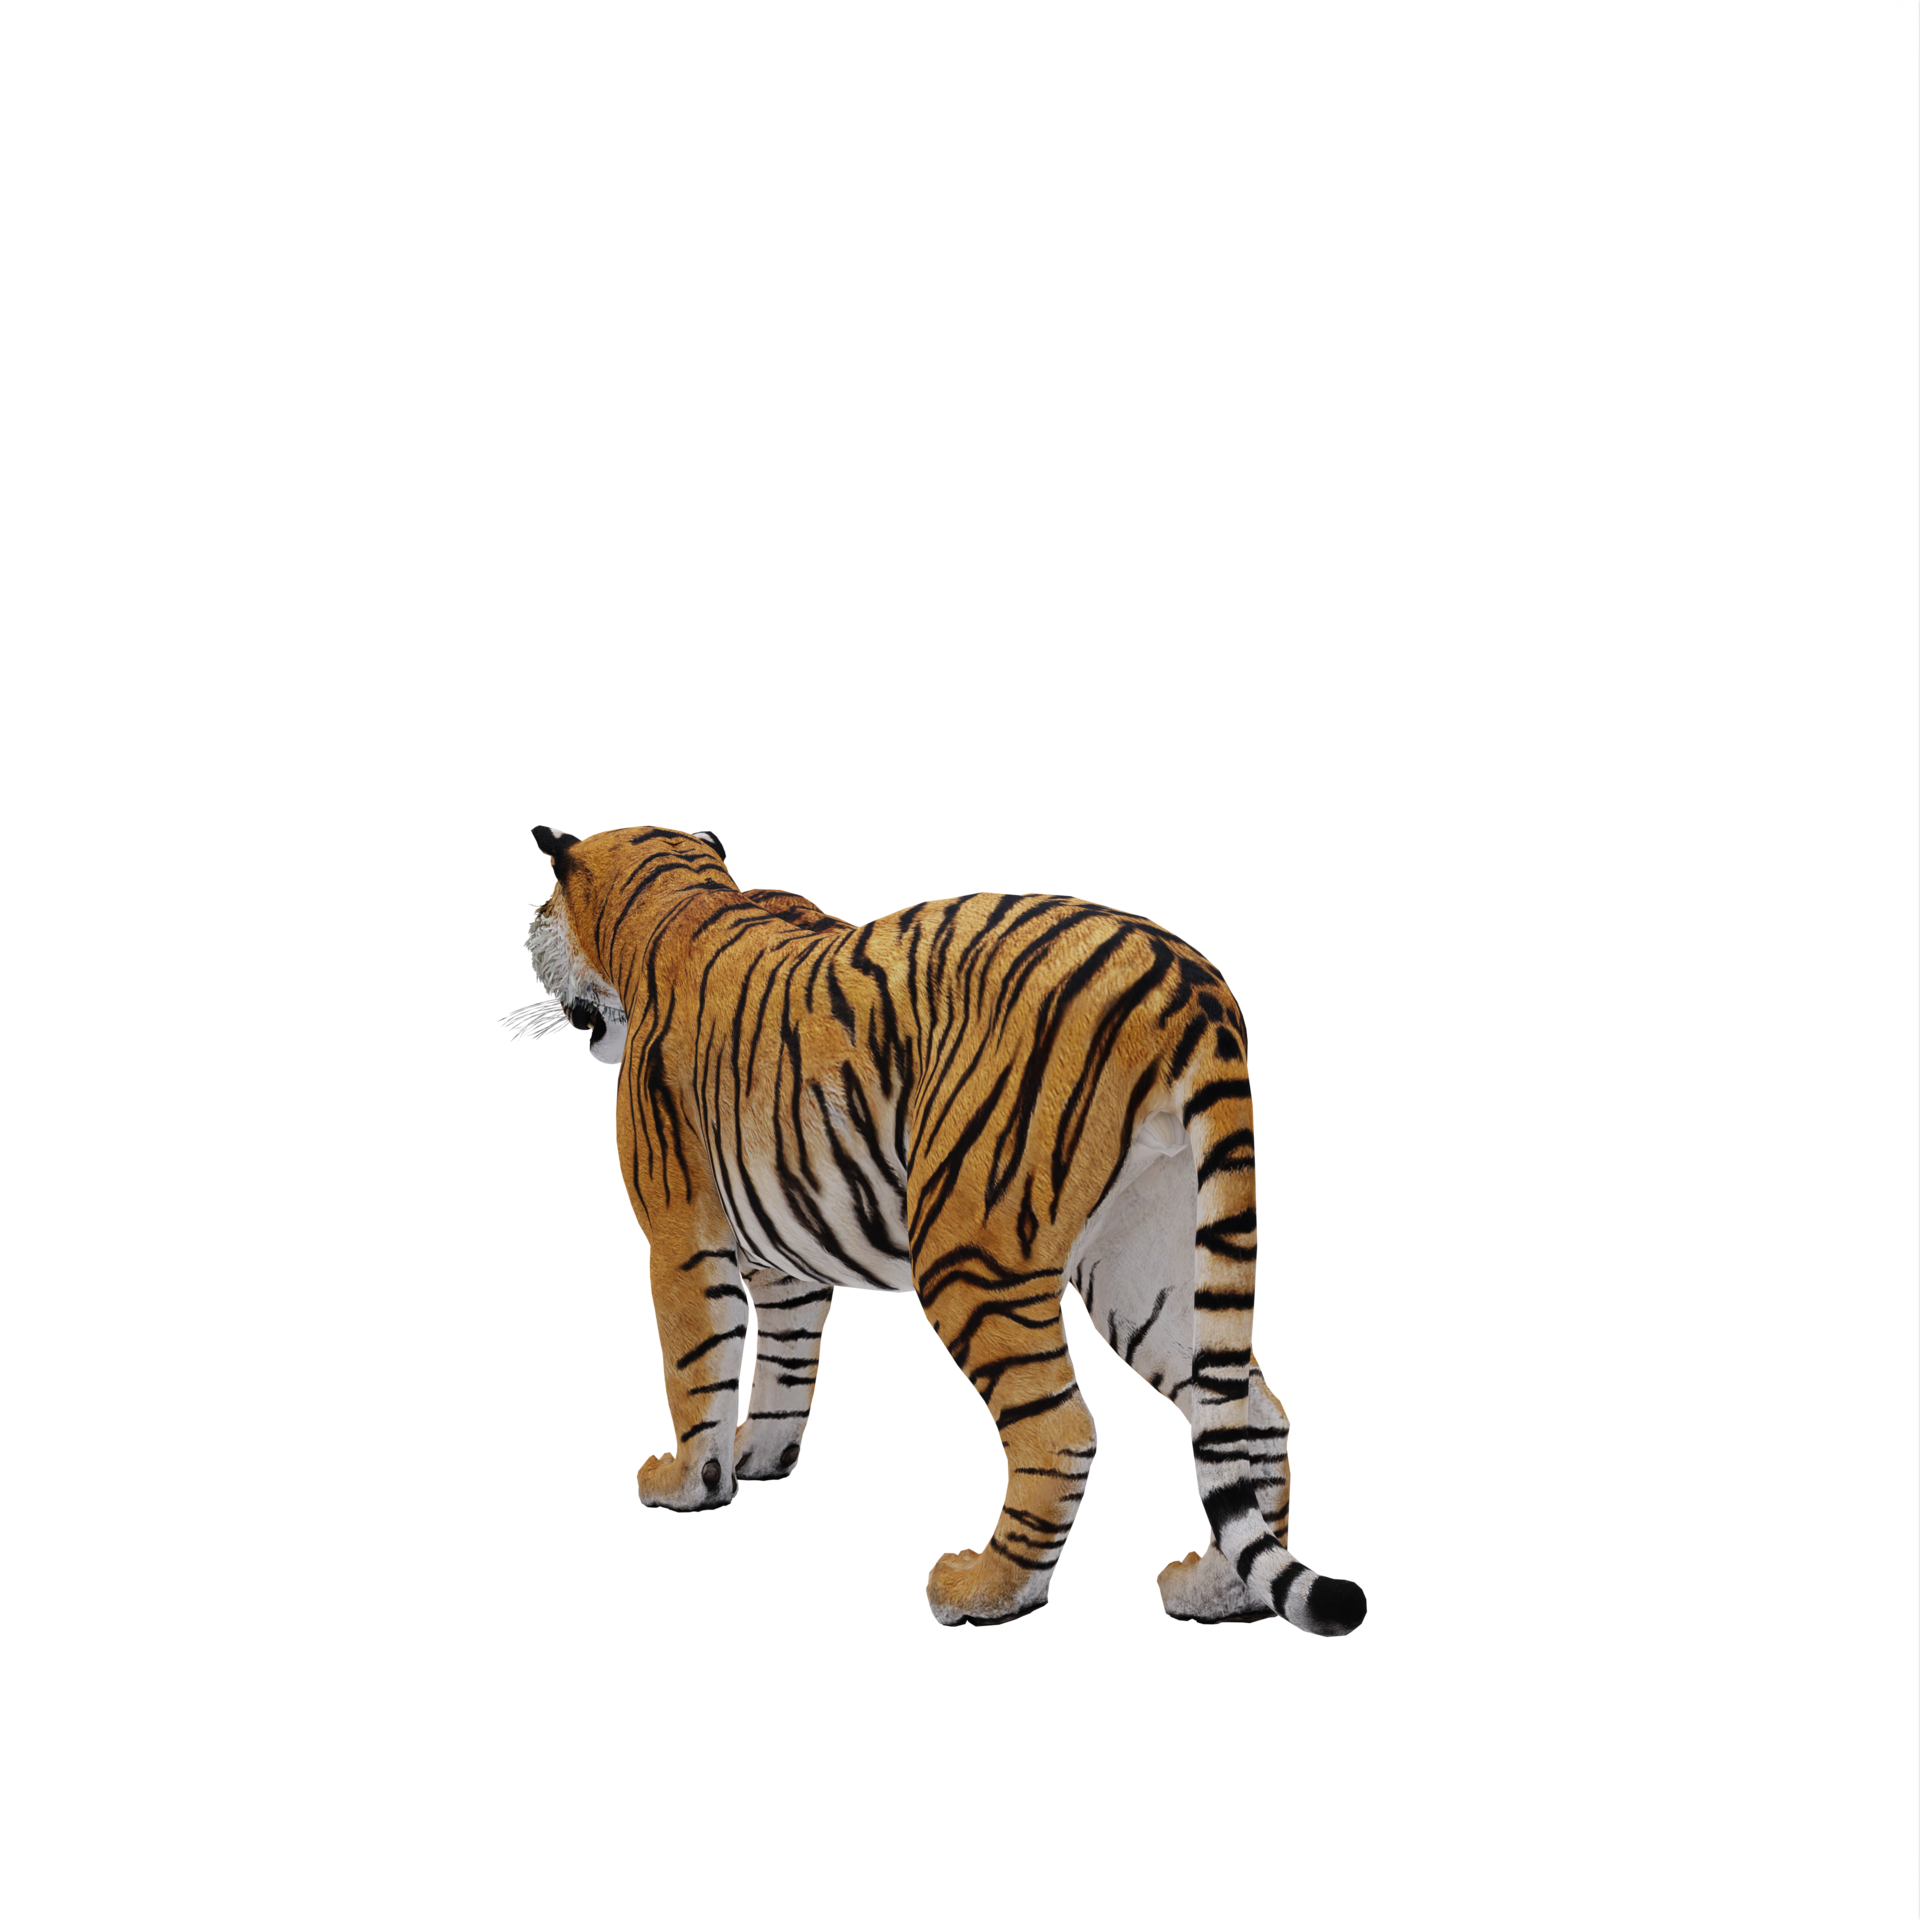 tigre 3d isolado 18875963 PNG